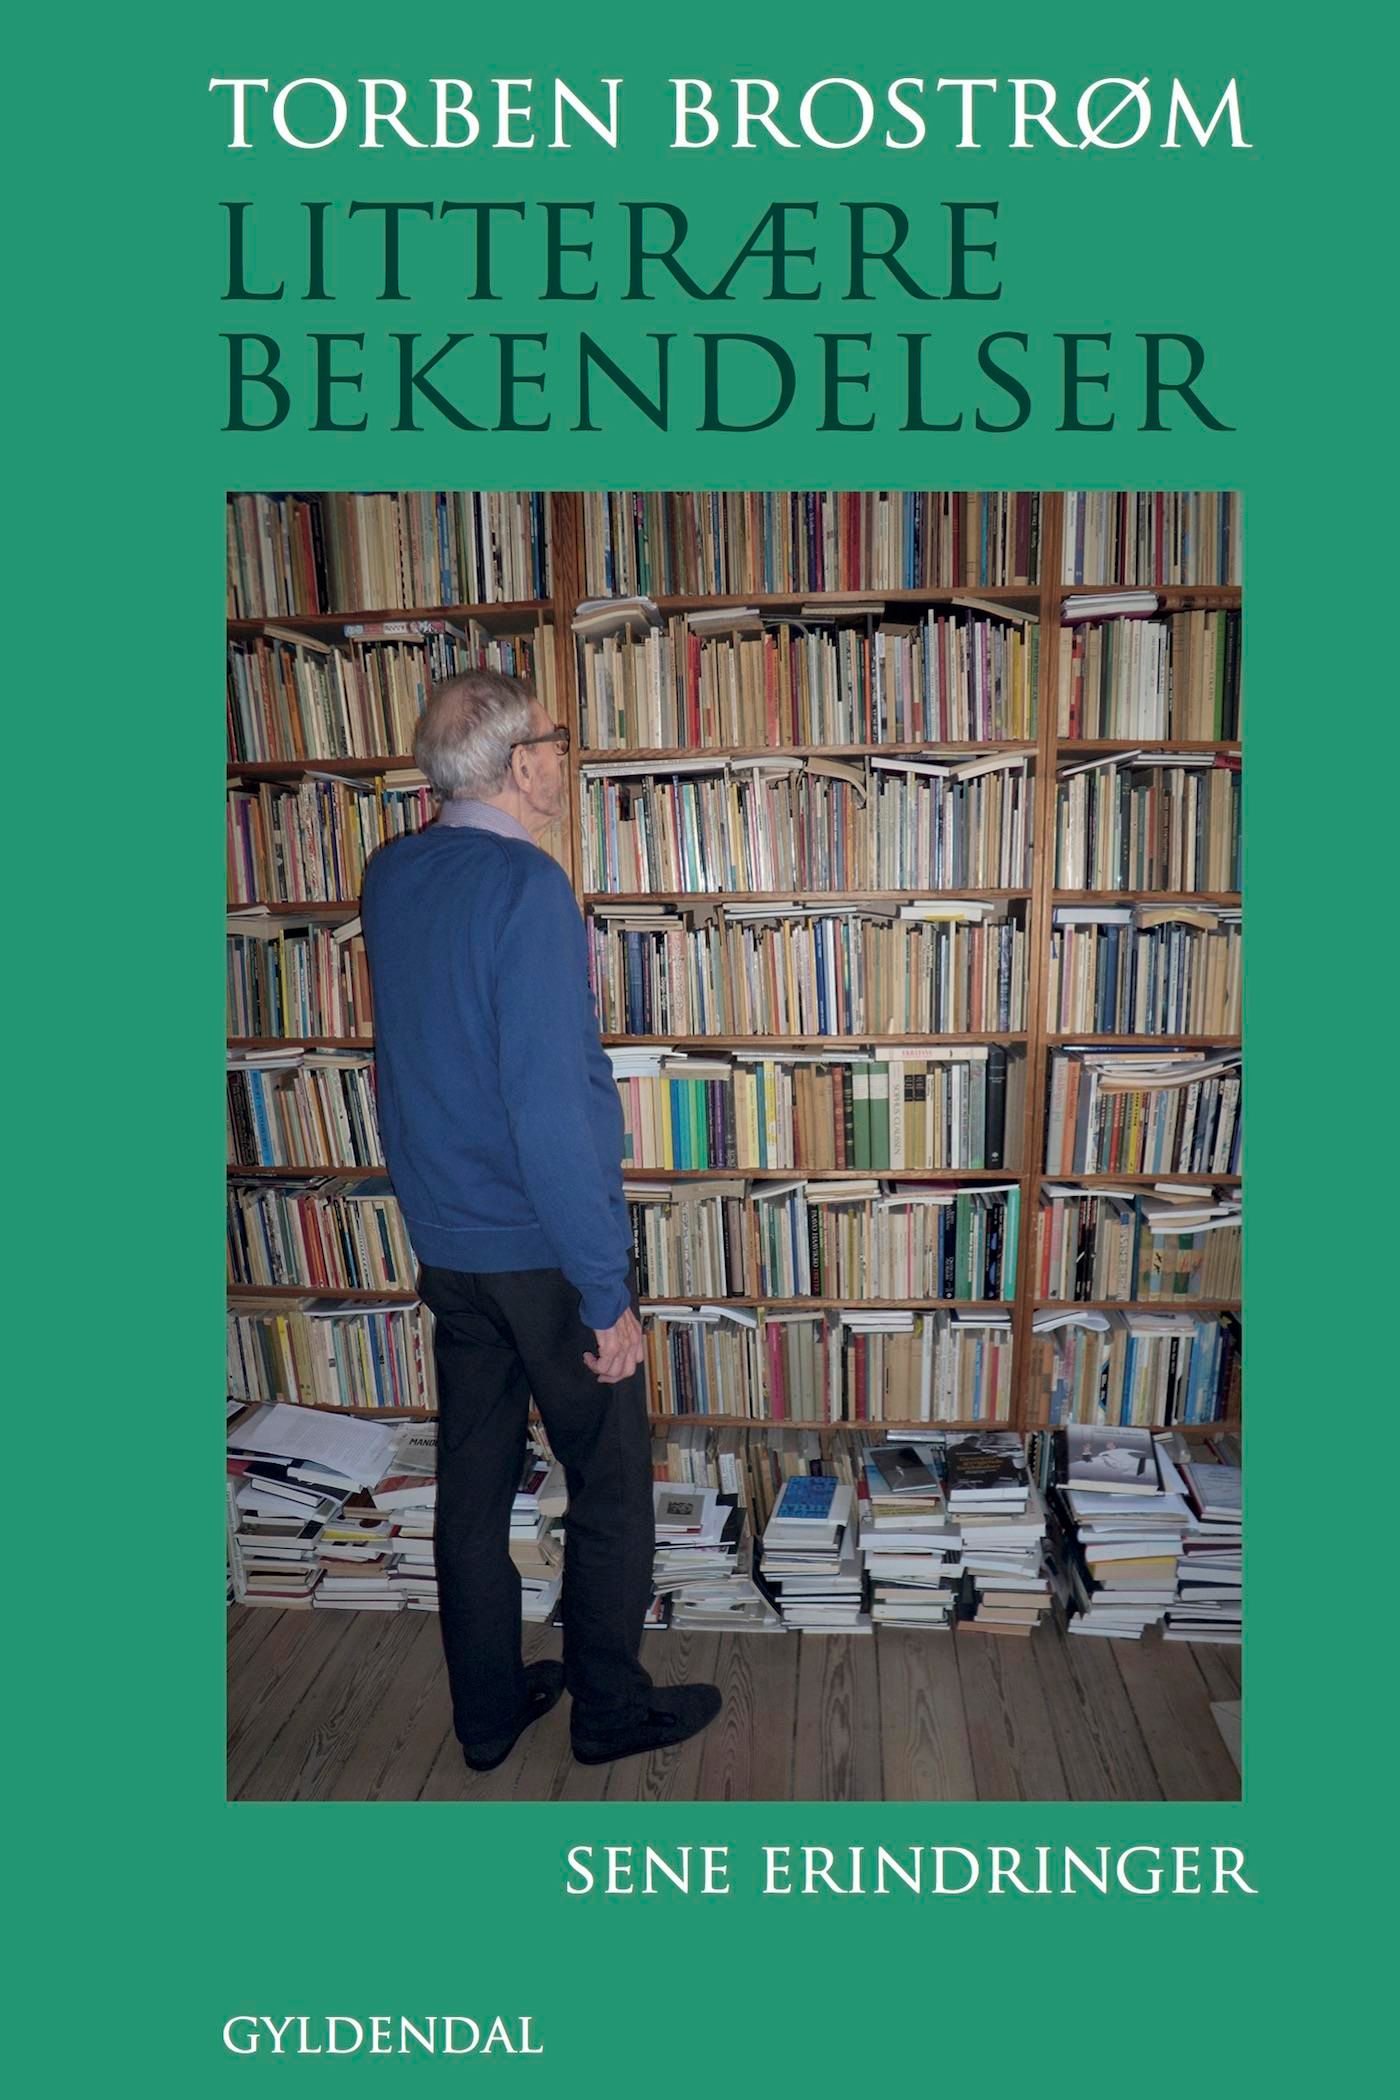 Litterære bekendelser, e-bok av Torben Brostrøm